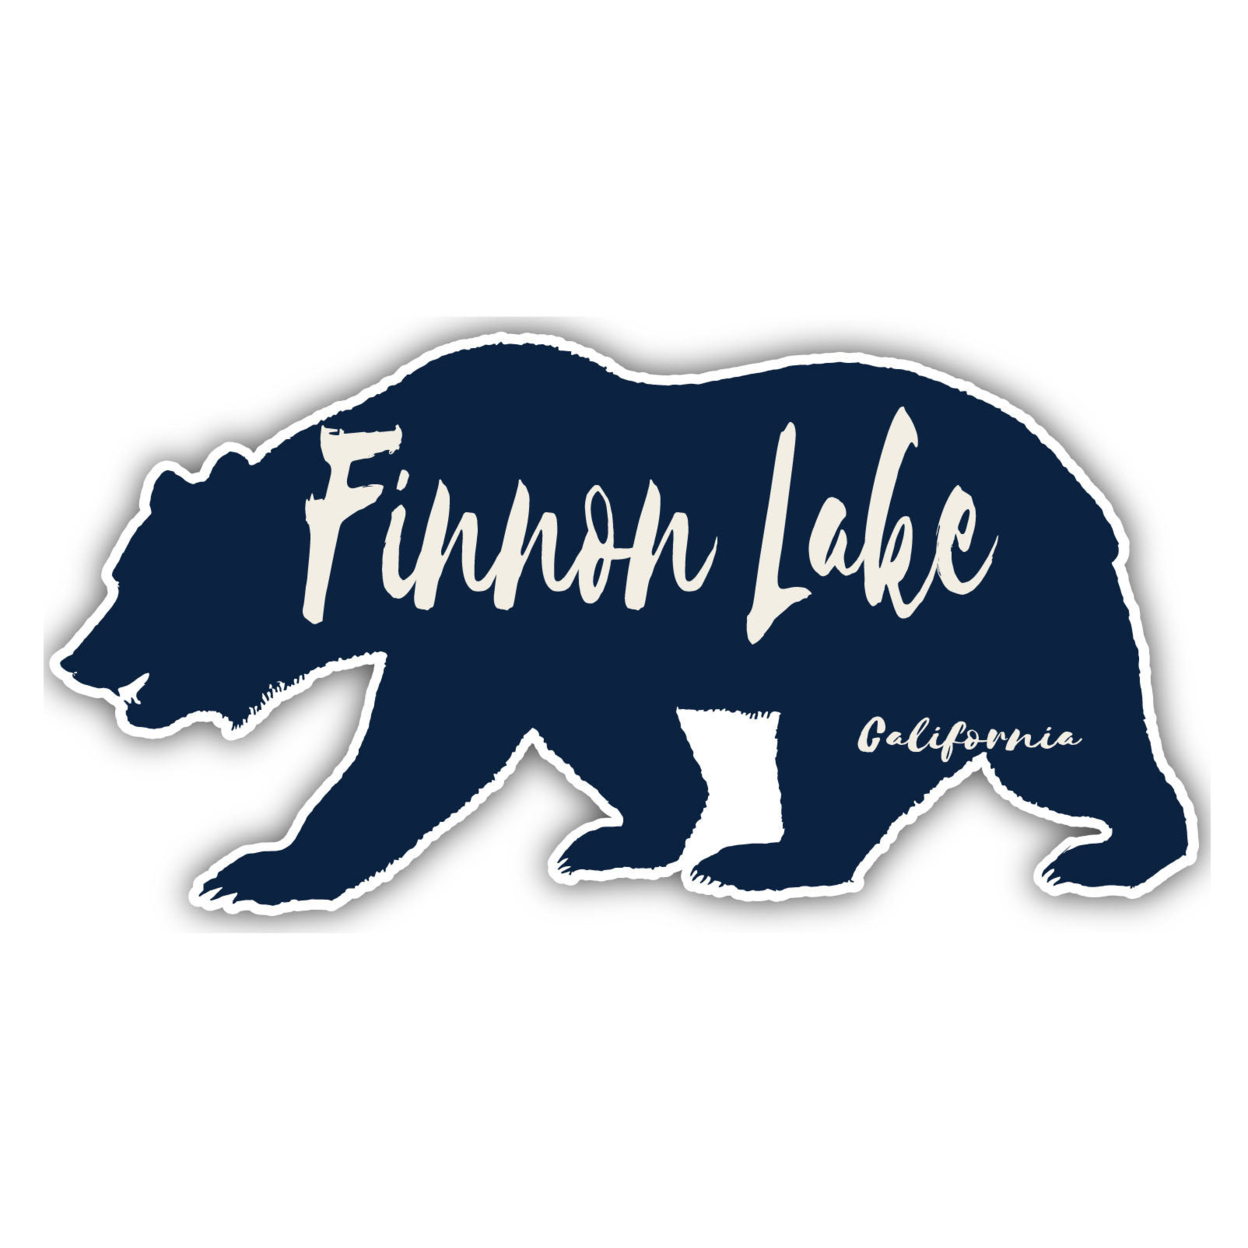 Finnon Lake California Souvenir Decorative Stickers (Choose Theme And Size) - Single Unit, 10-Inch, Tent